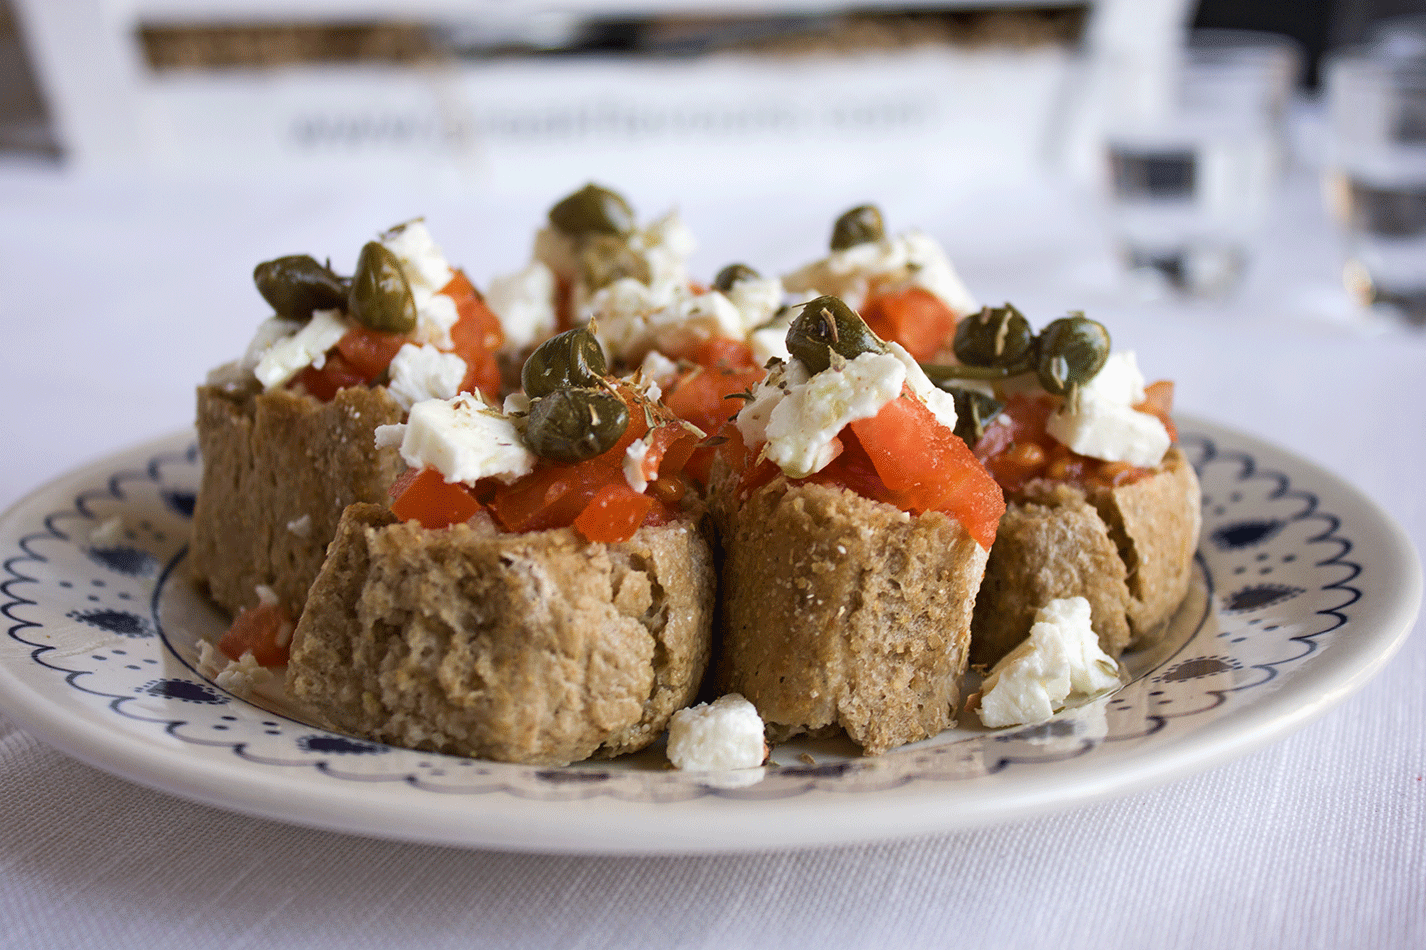 Recette Crete: Spécialités culinaires crétoises  